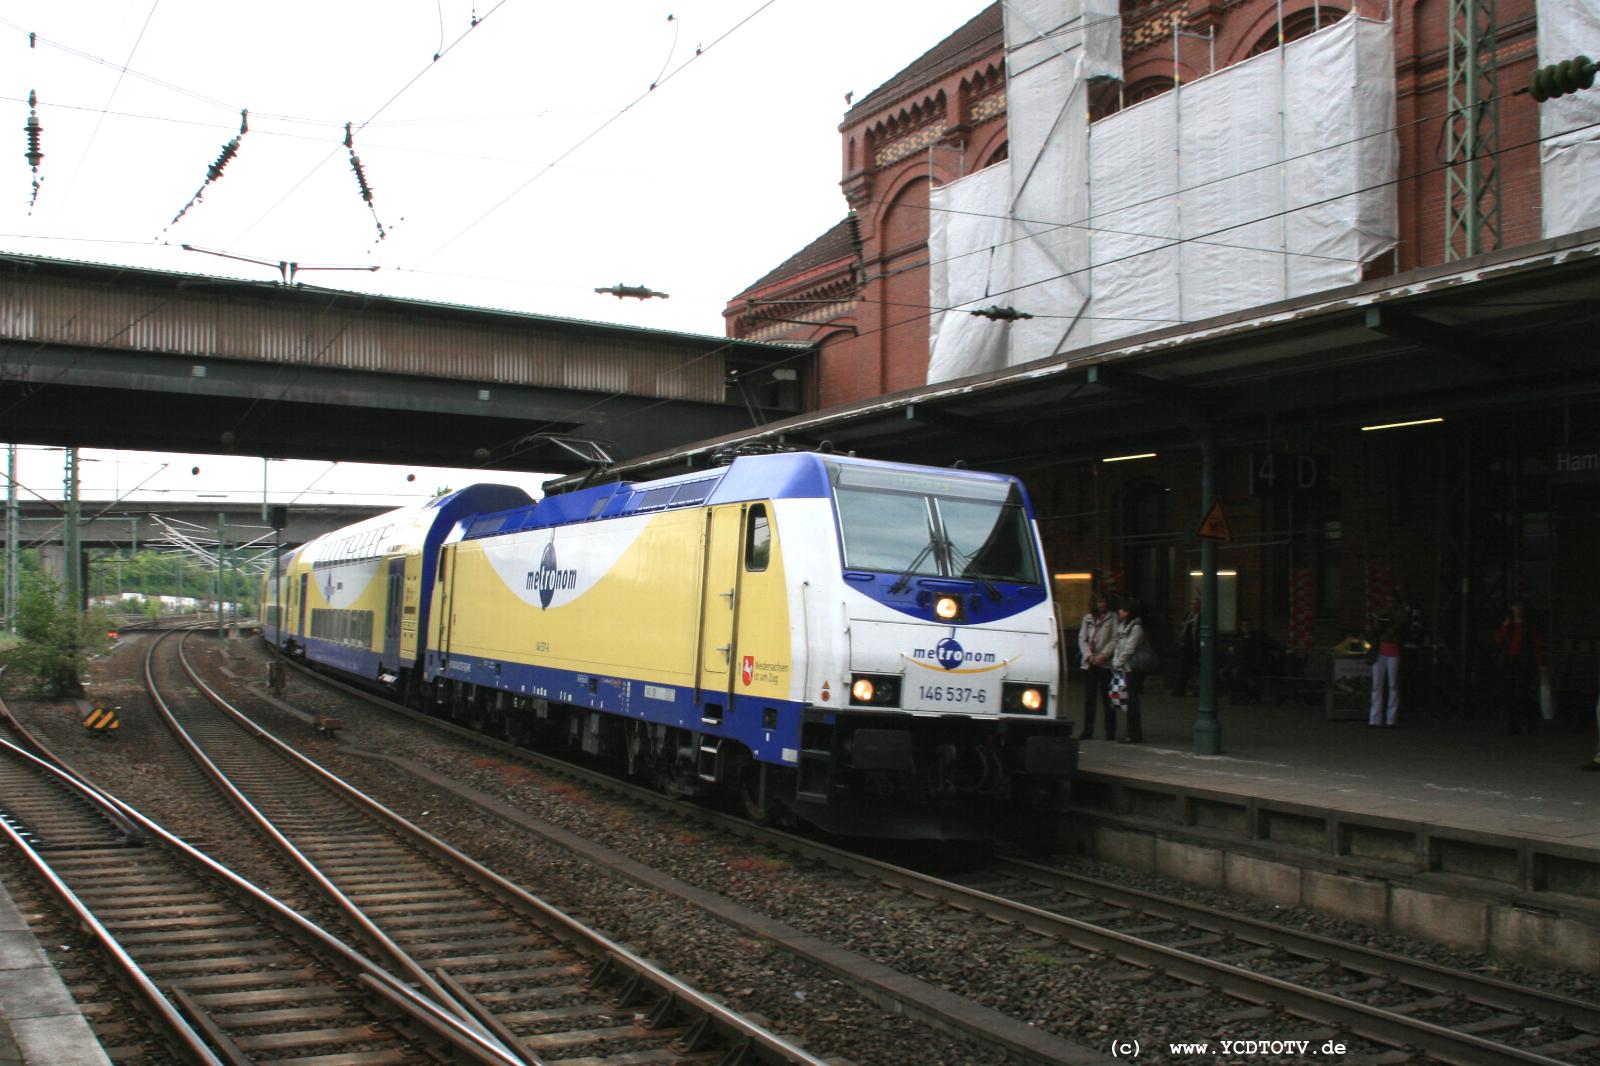  Bahnhof Hamburg-Harburg, 18.05.2011, 14:34 146 537-6 Richtung Sden 